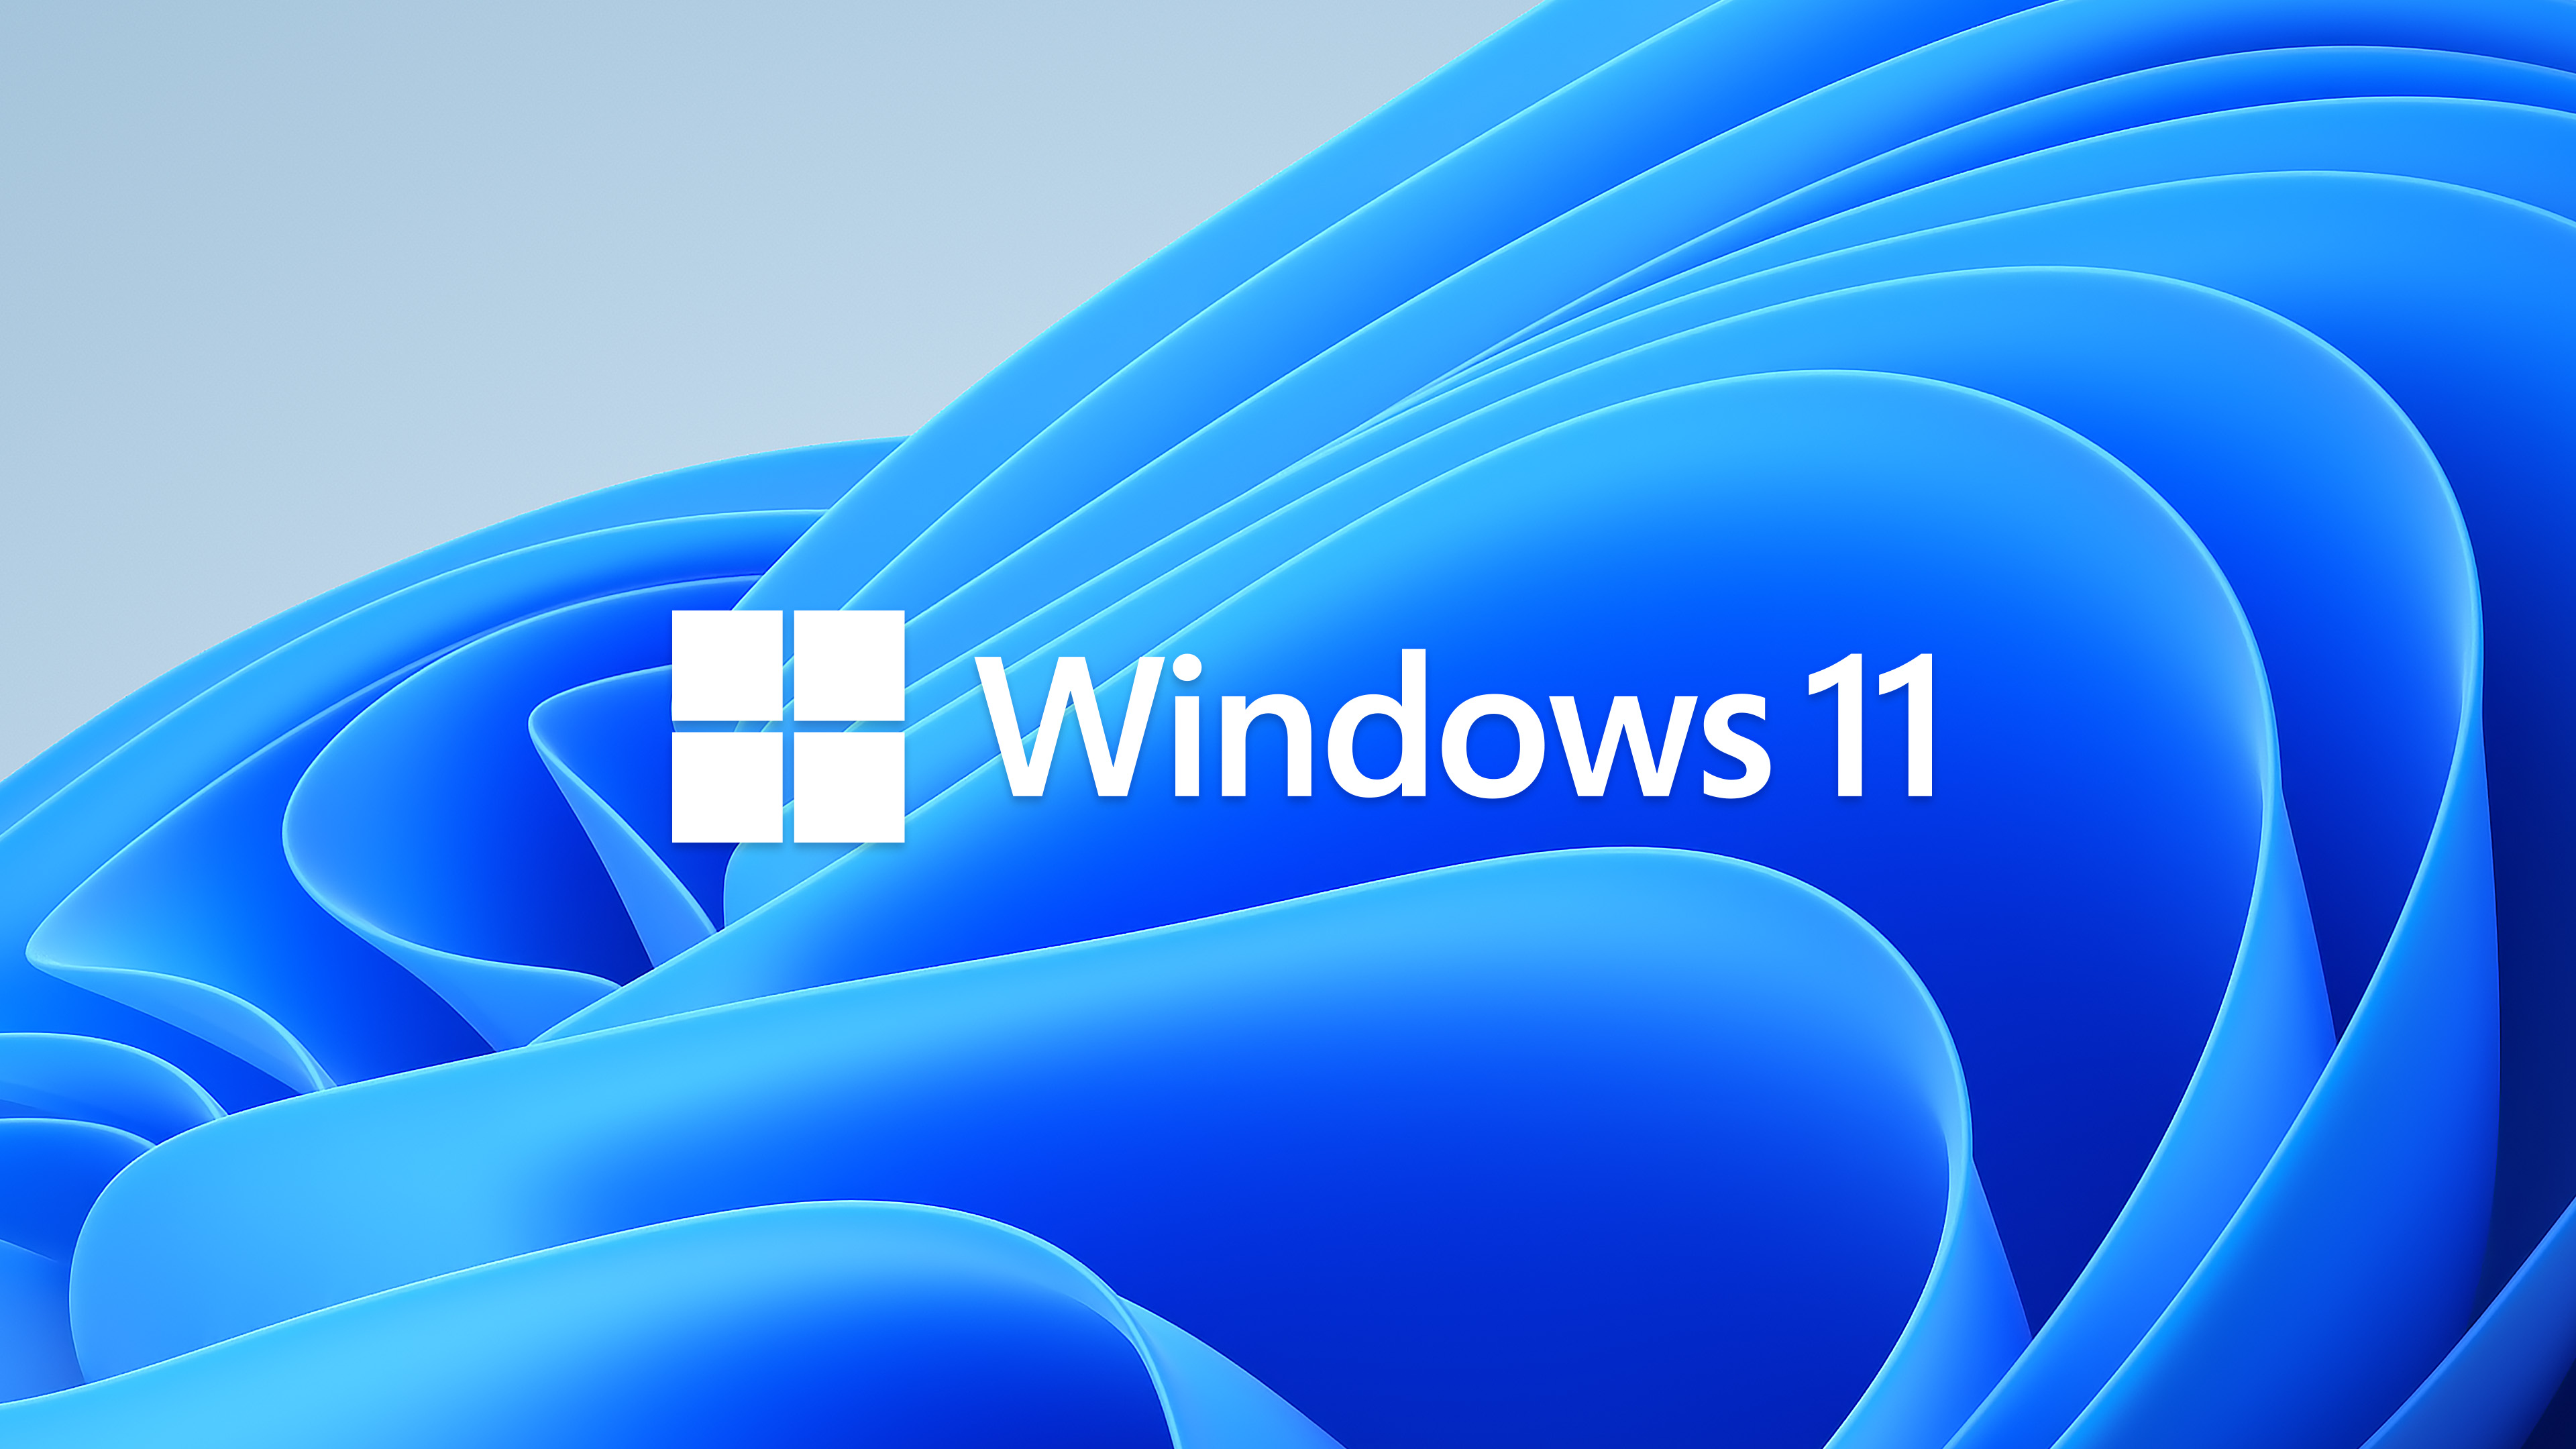 Download Windows 11 Full ISO mới nhất 2021 – Hướng dẫn cài đặt Win 11